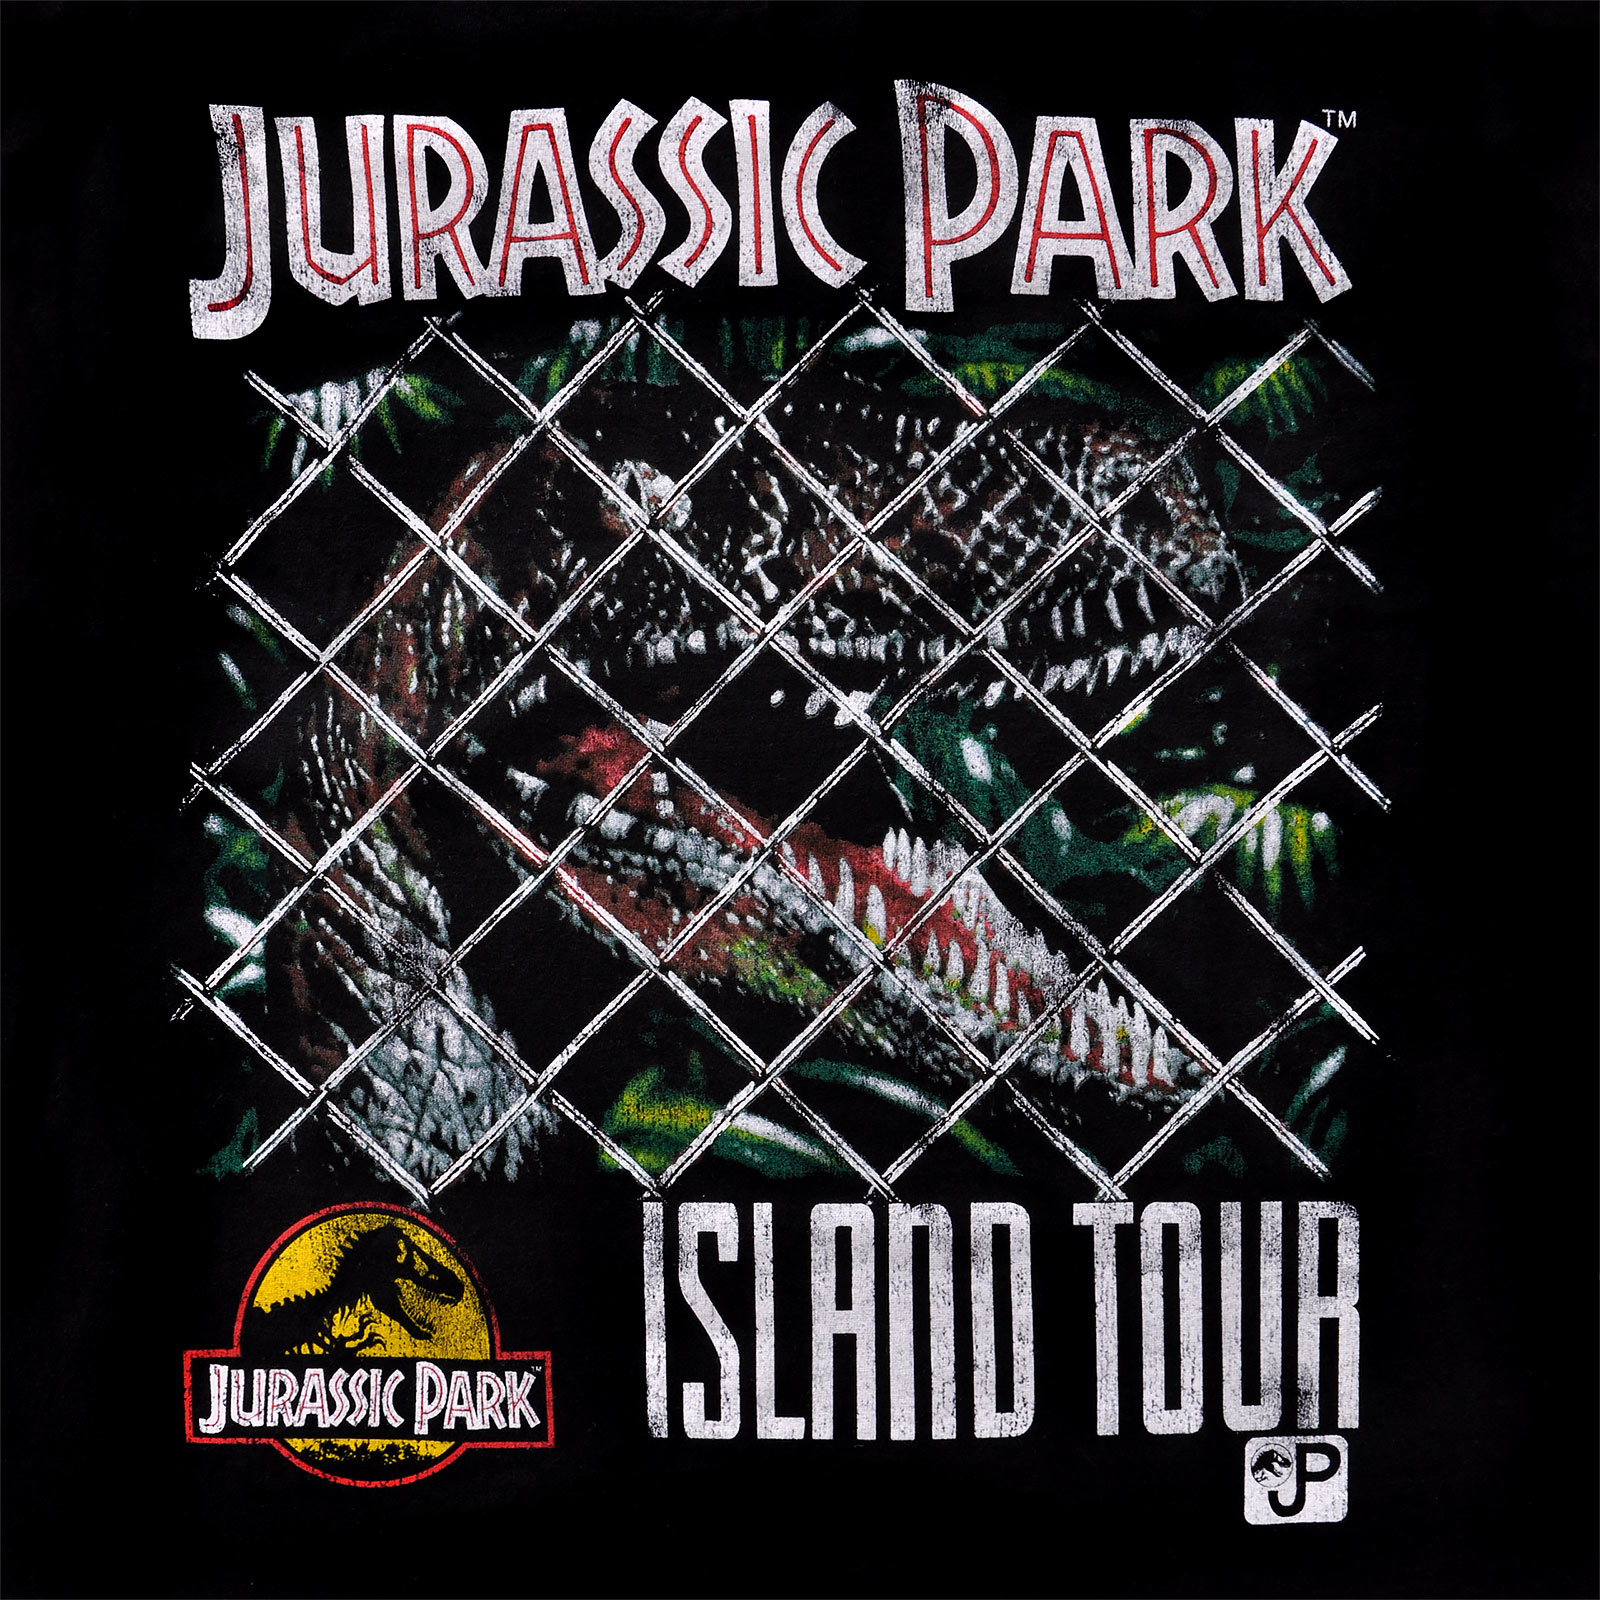 Jurassic Park - T-shirt Island Tour noir